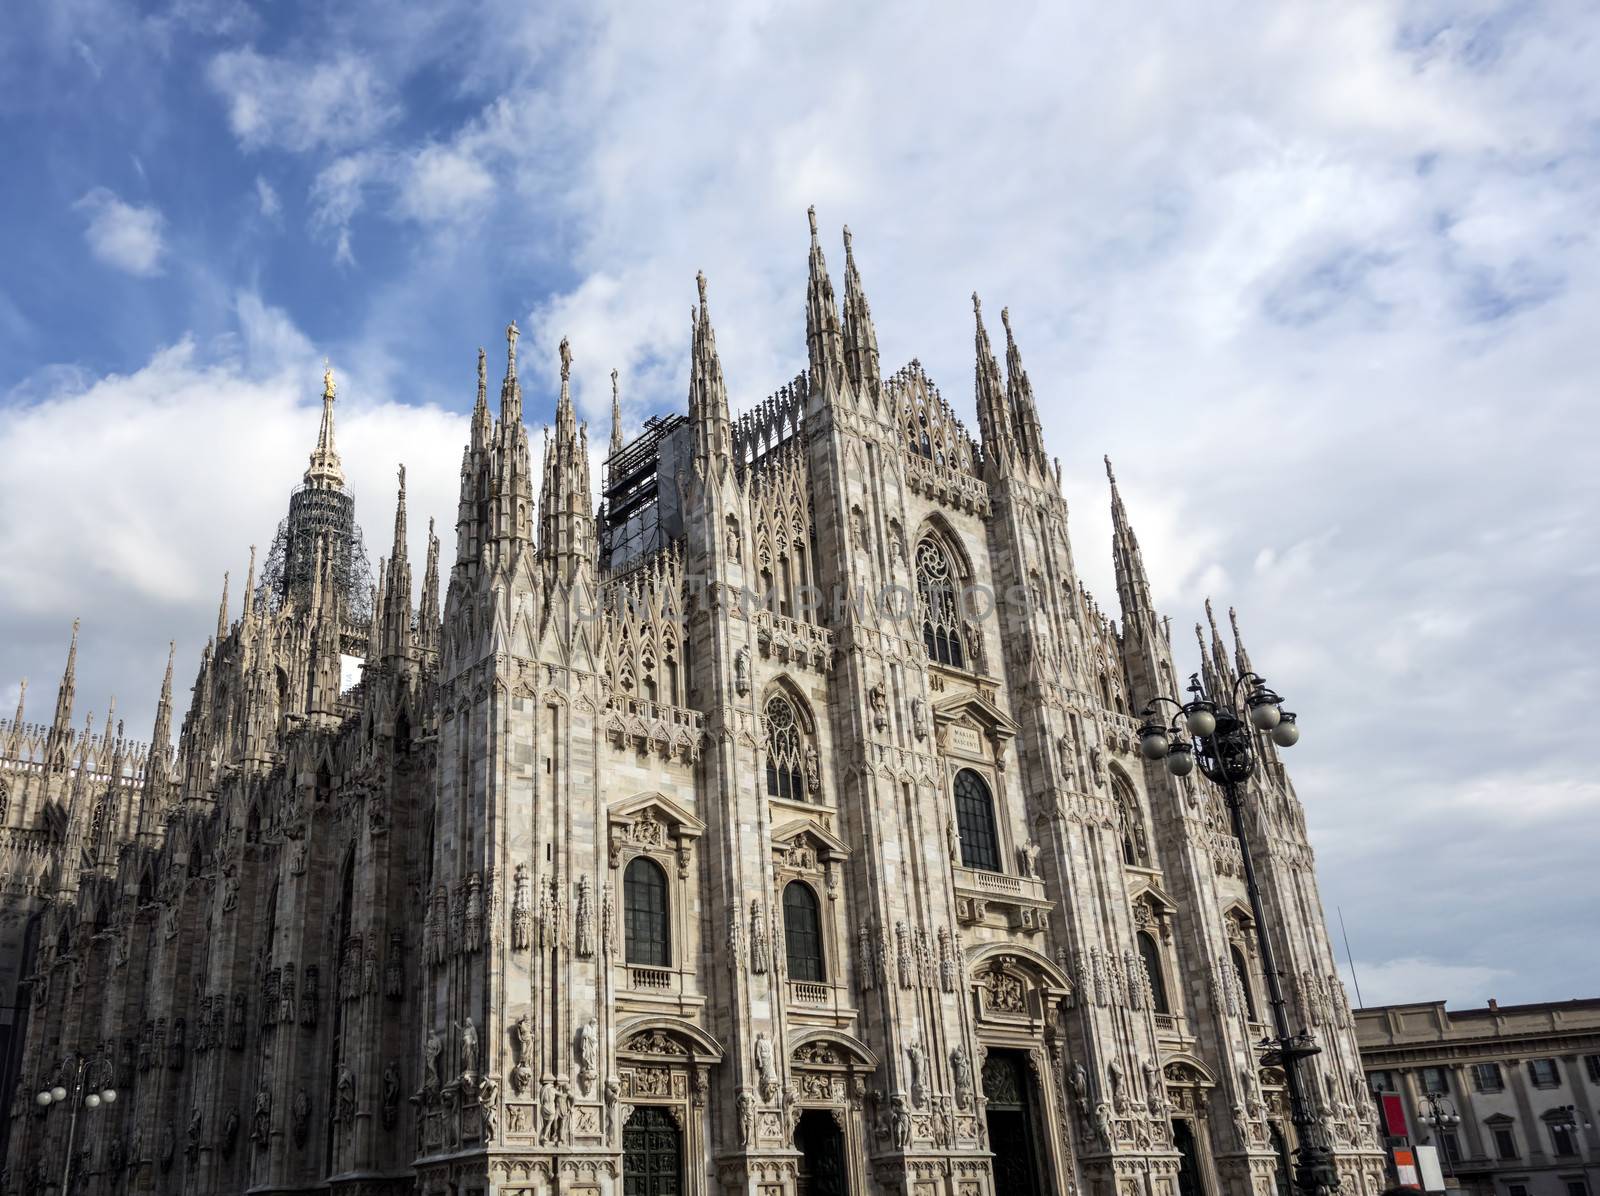 Facade of Cathedral Duomo, Milan by ibphoto